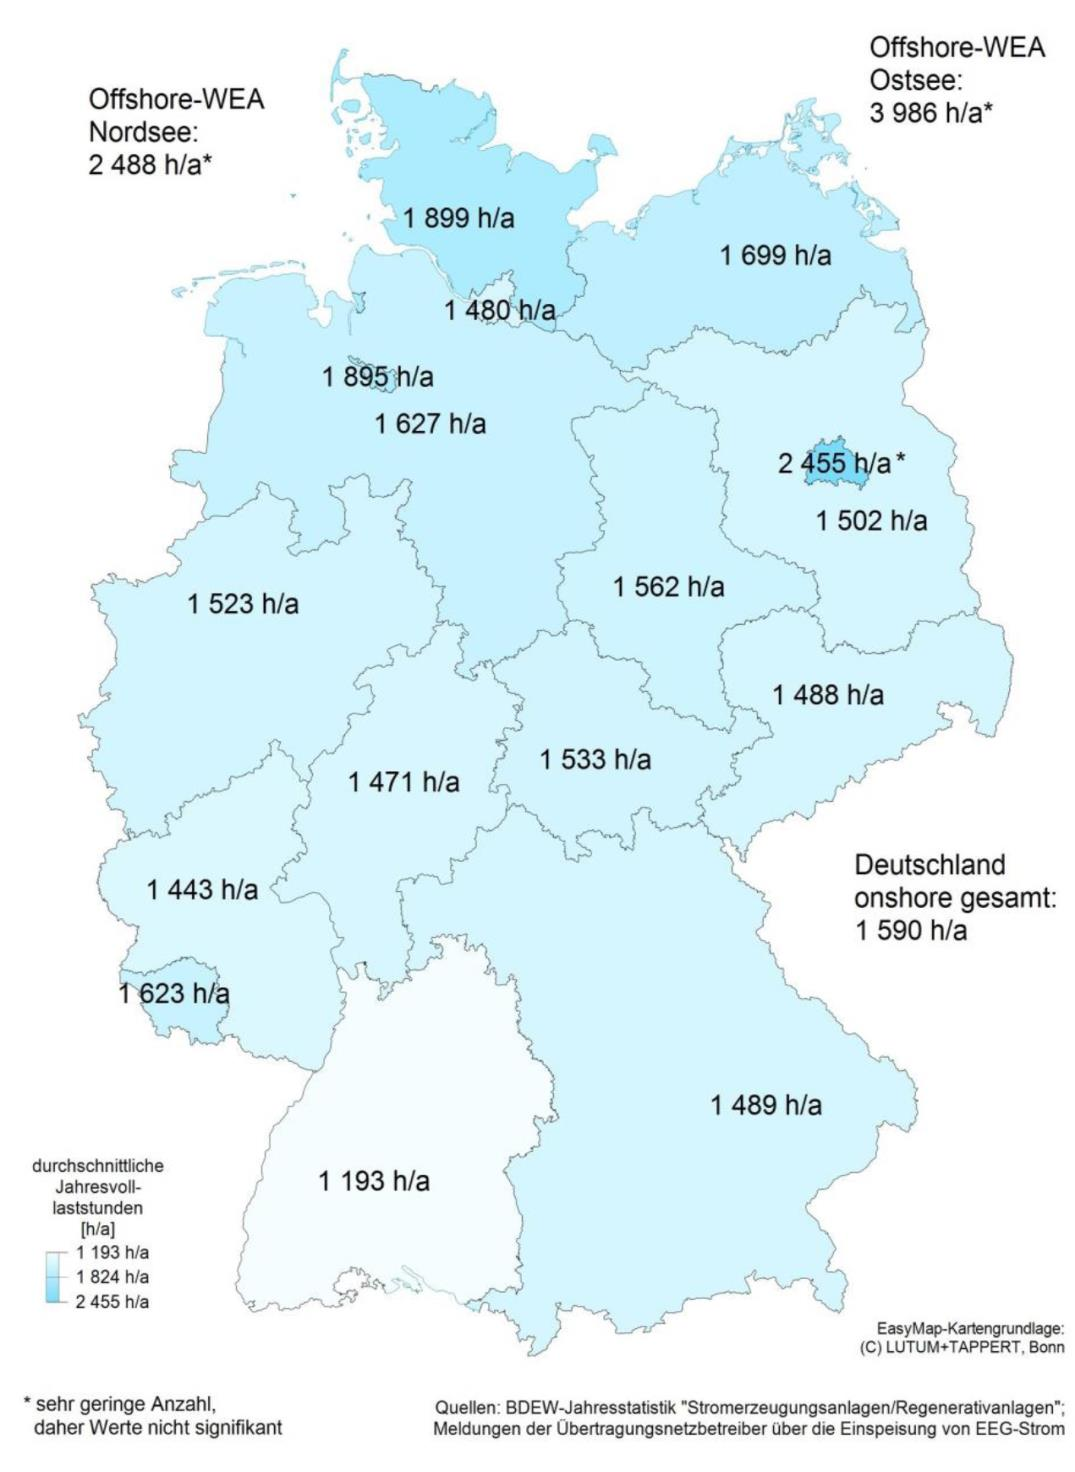 Czasy dla poszczególnych prowincji w Niemczech pokazuje mapa obok. To są realia!